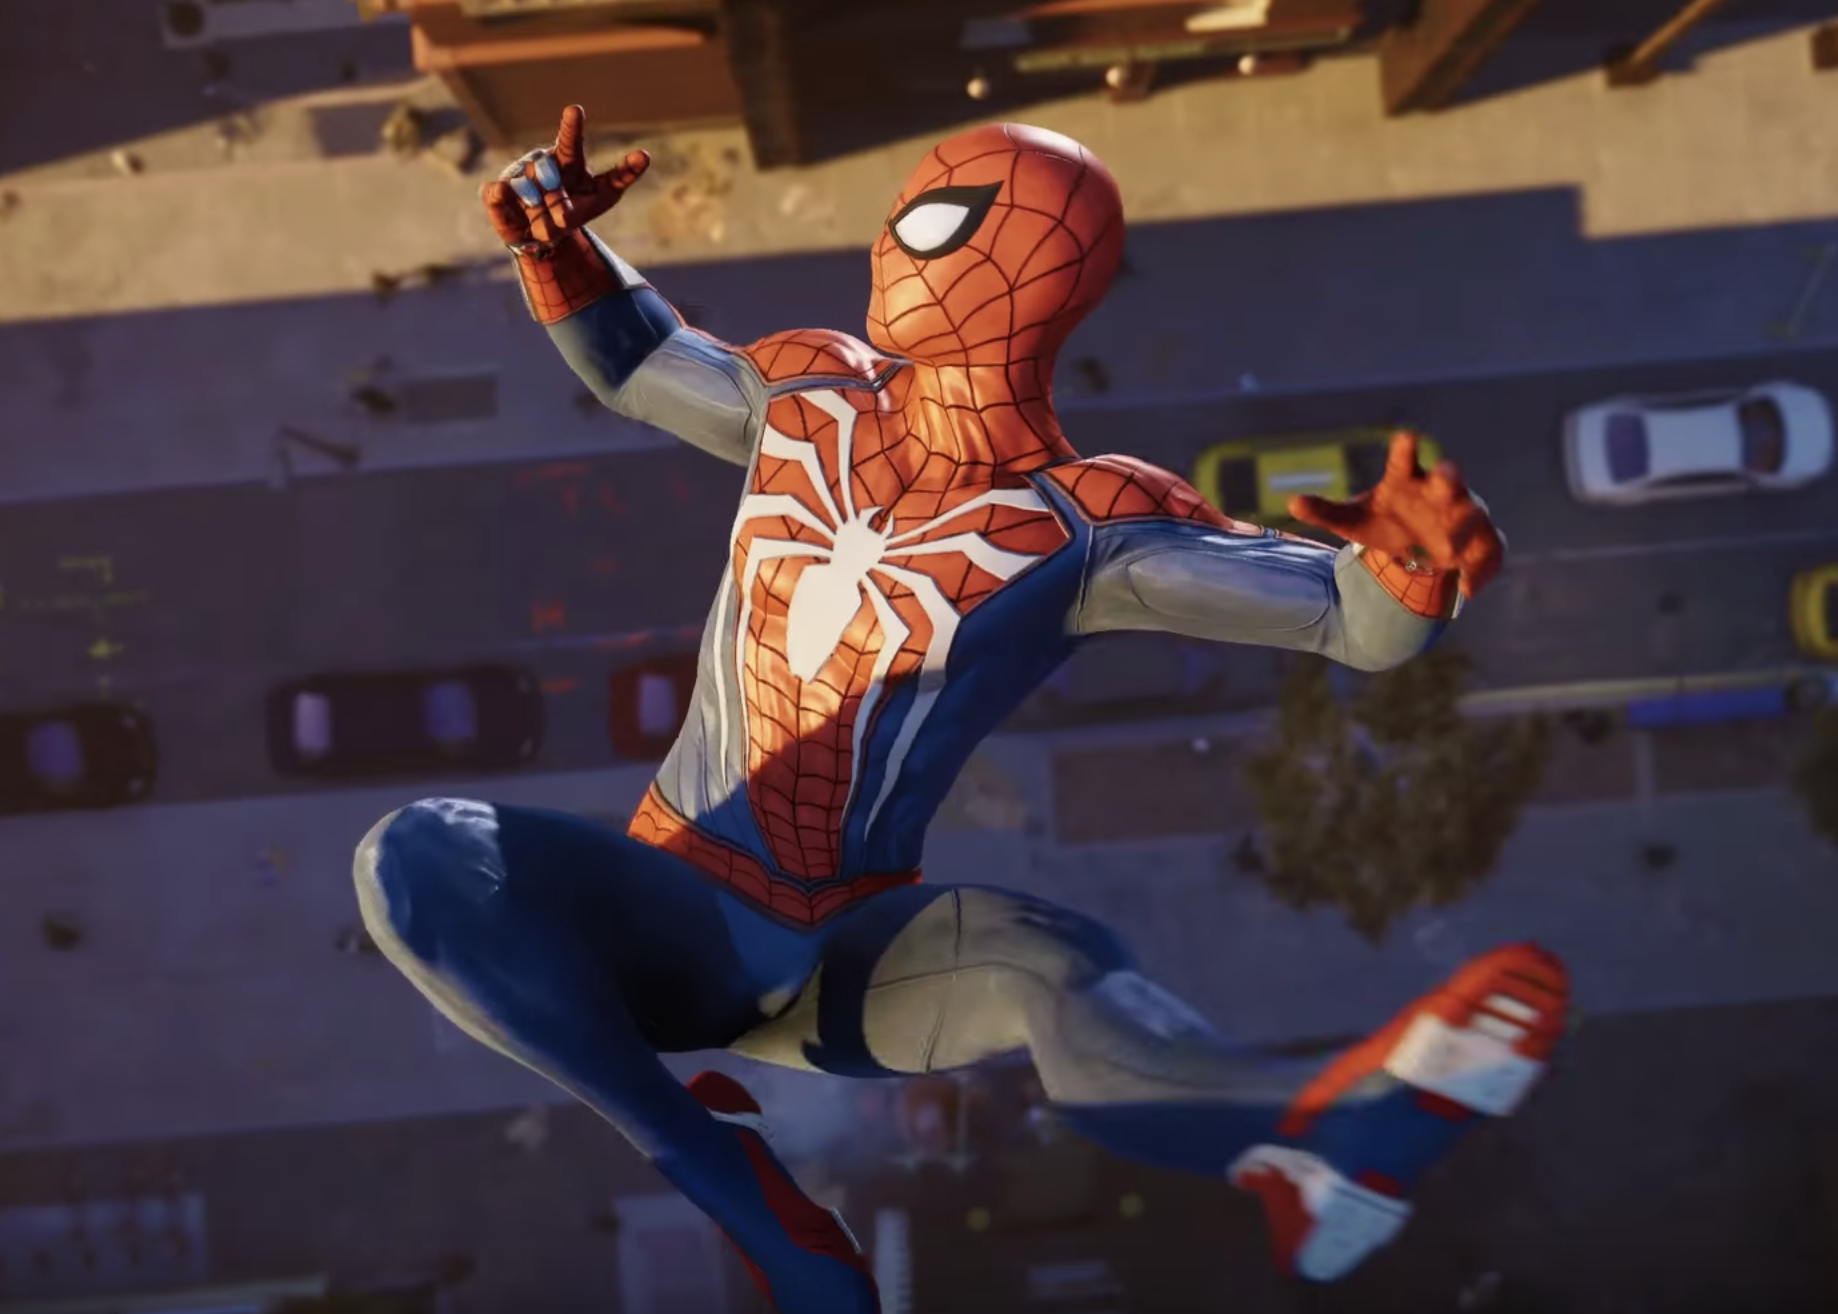 Spider man ps4. Человек паук игра на пс4. Marvel человек-паук (ps4). Spider man 2018 ps4. Человек паук играть 5